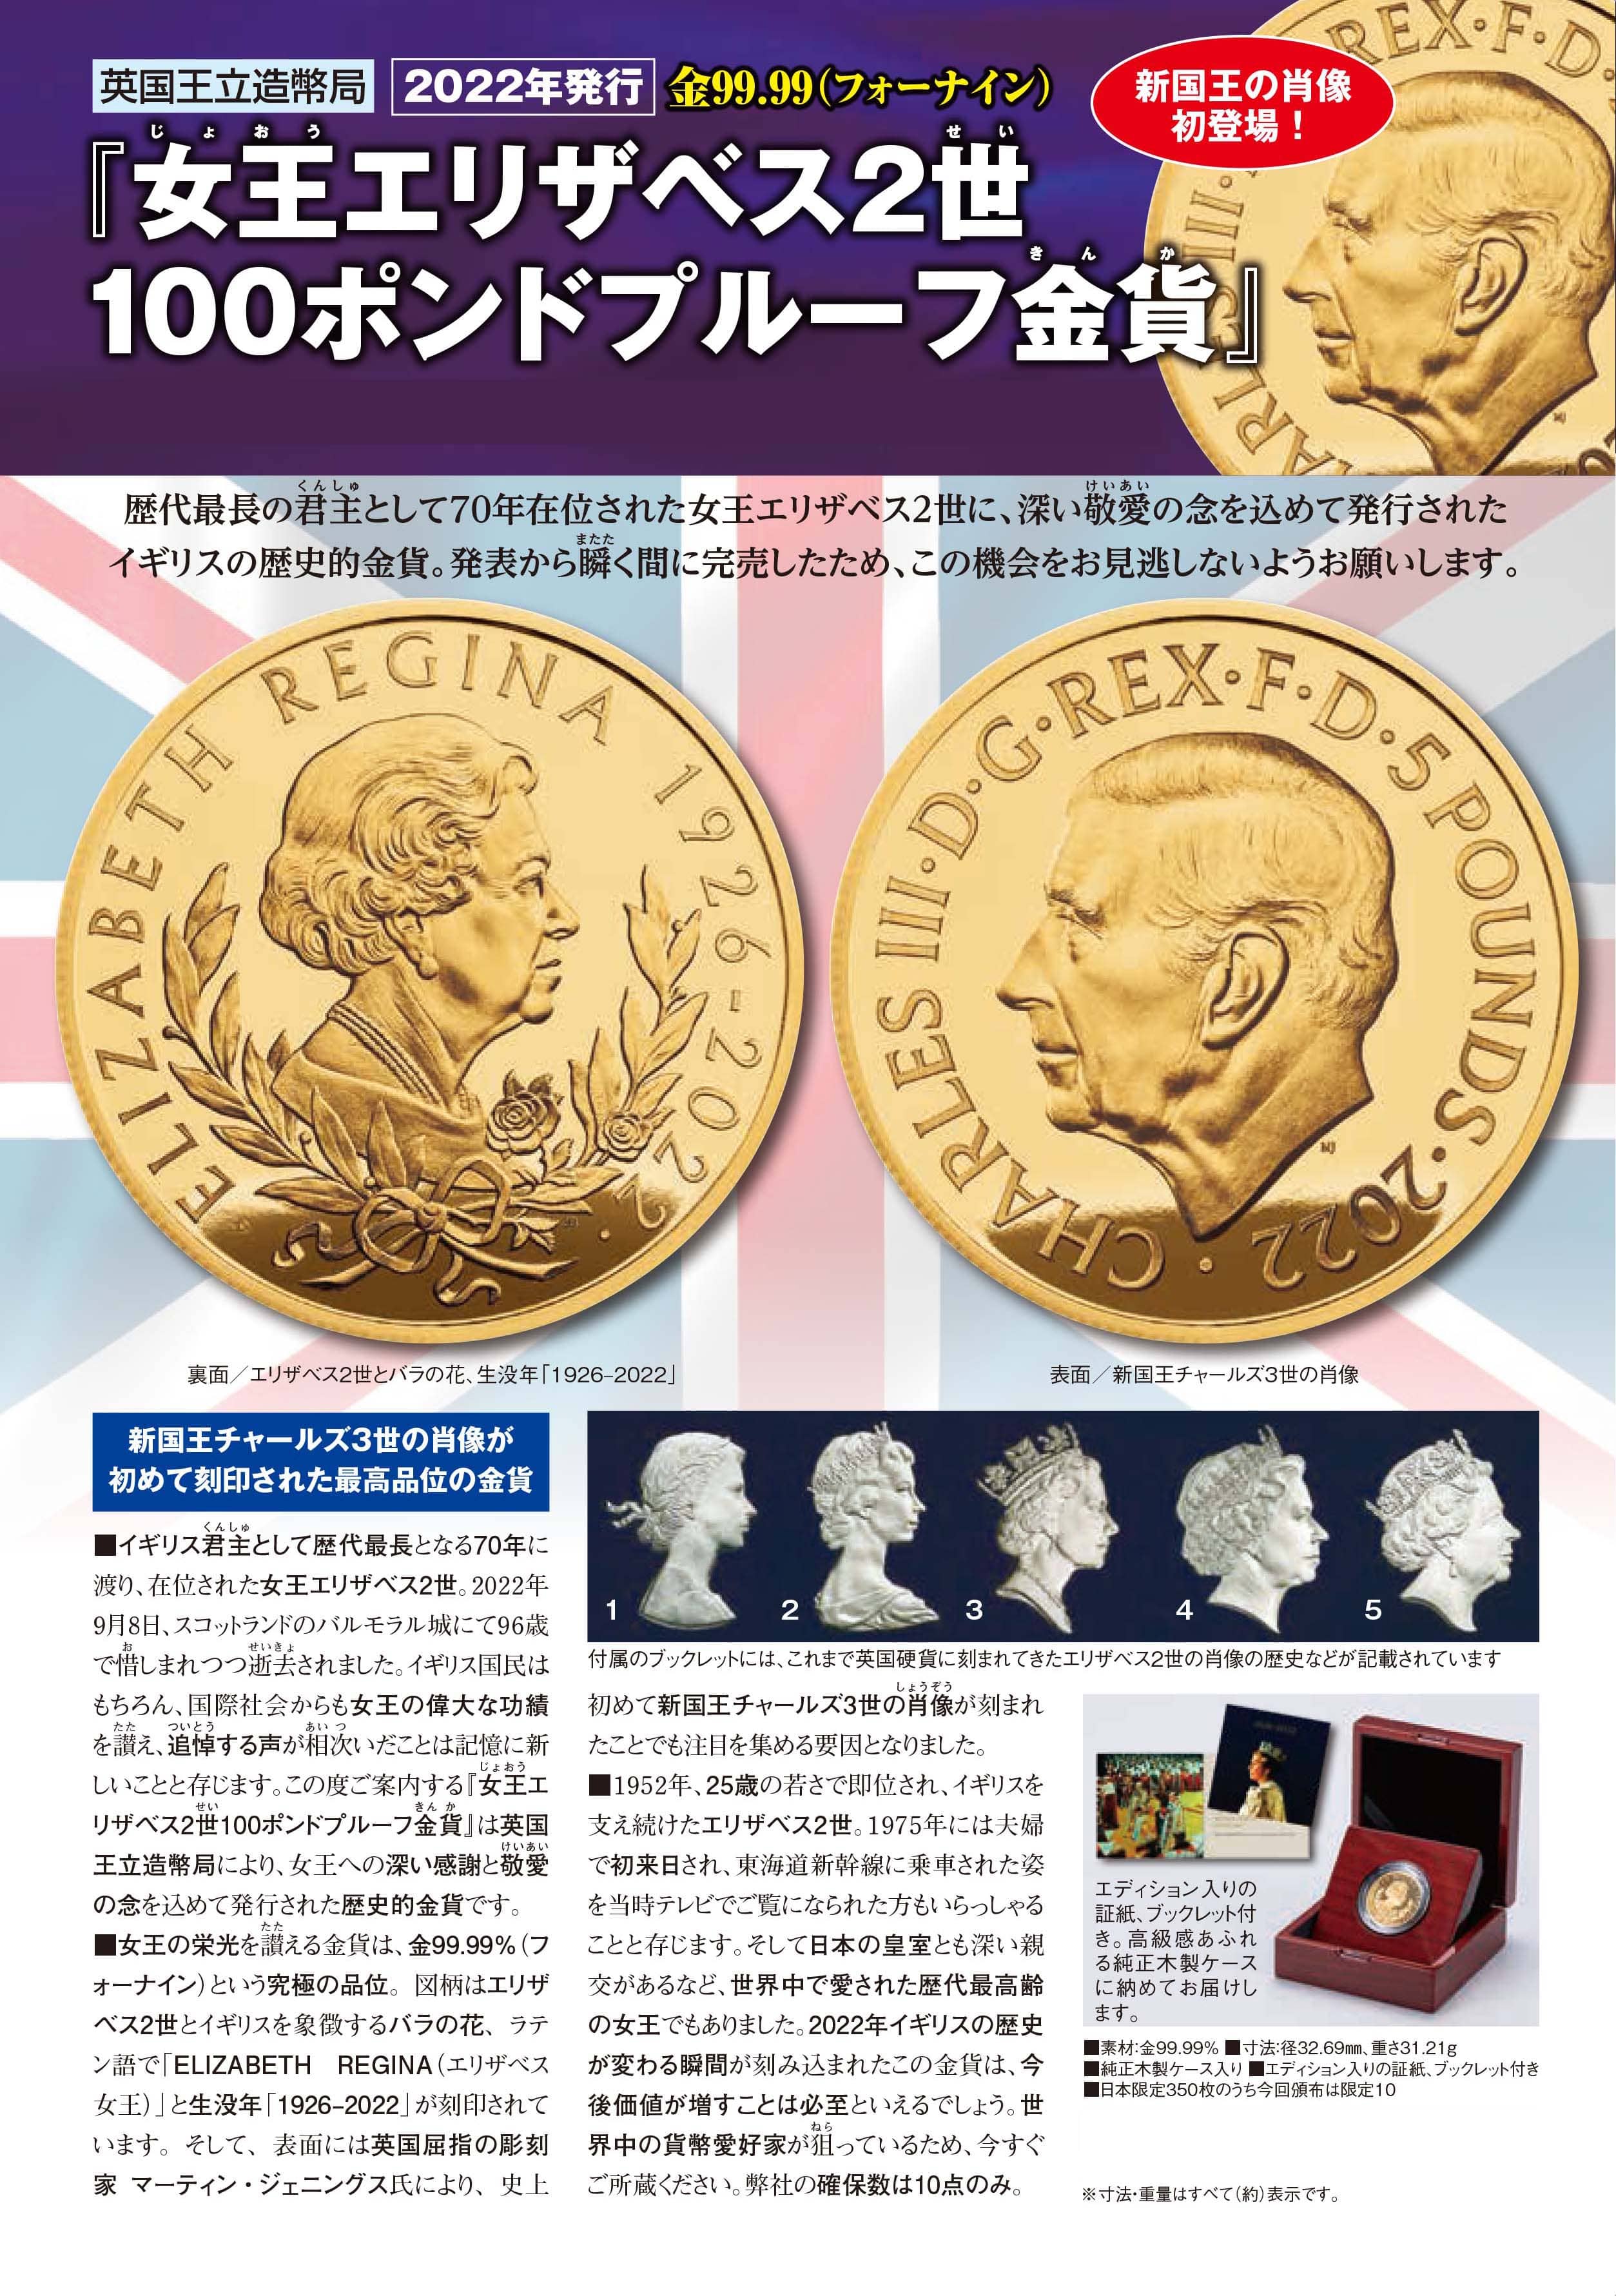 英国 2022年発行『女王エリザベス2世100ポンドプルーフ金貨』 | 東京書